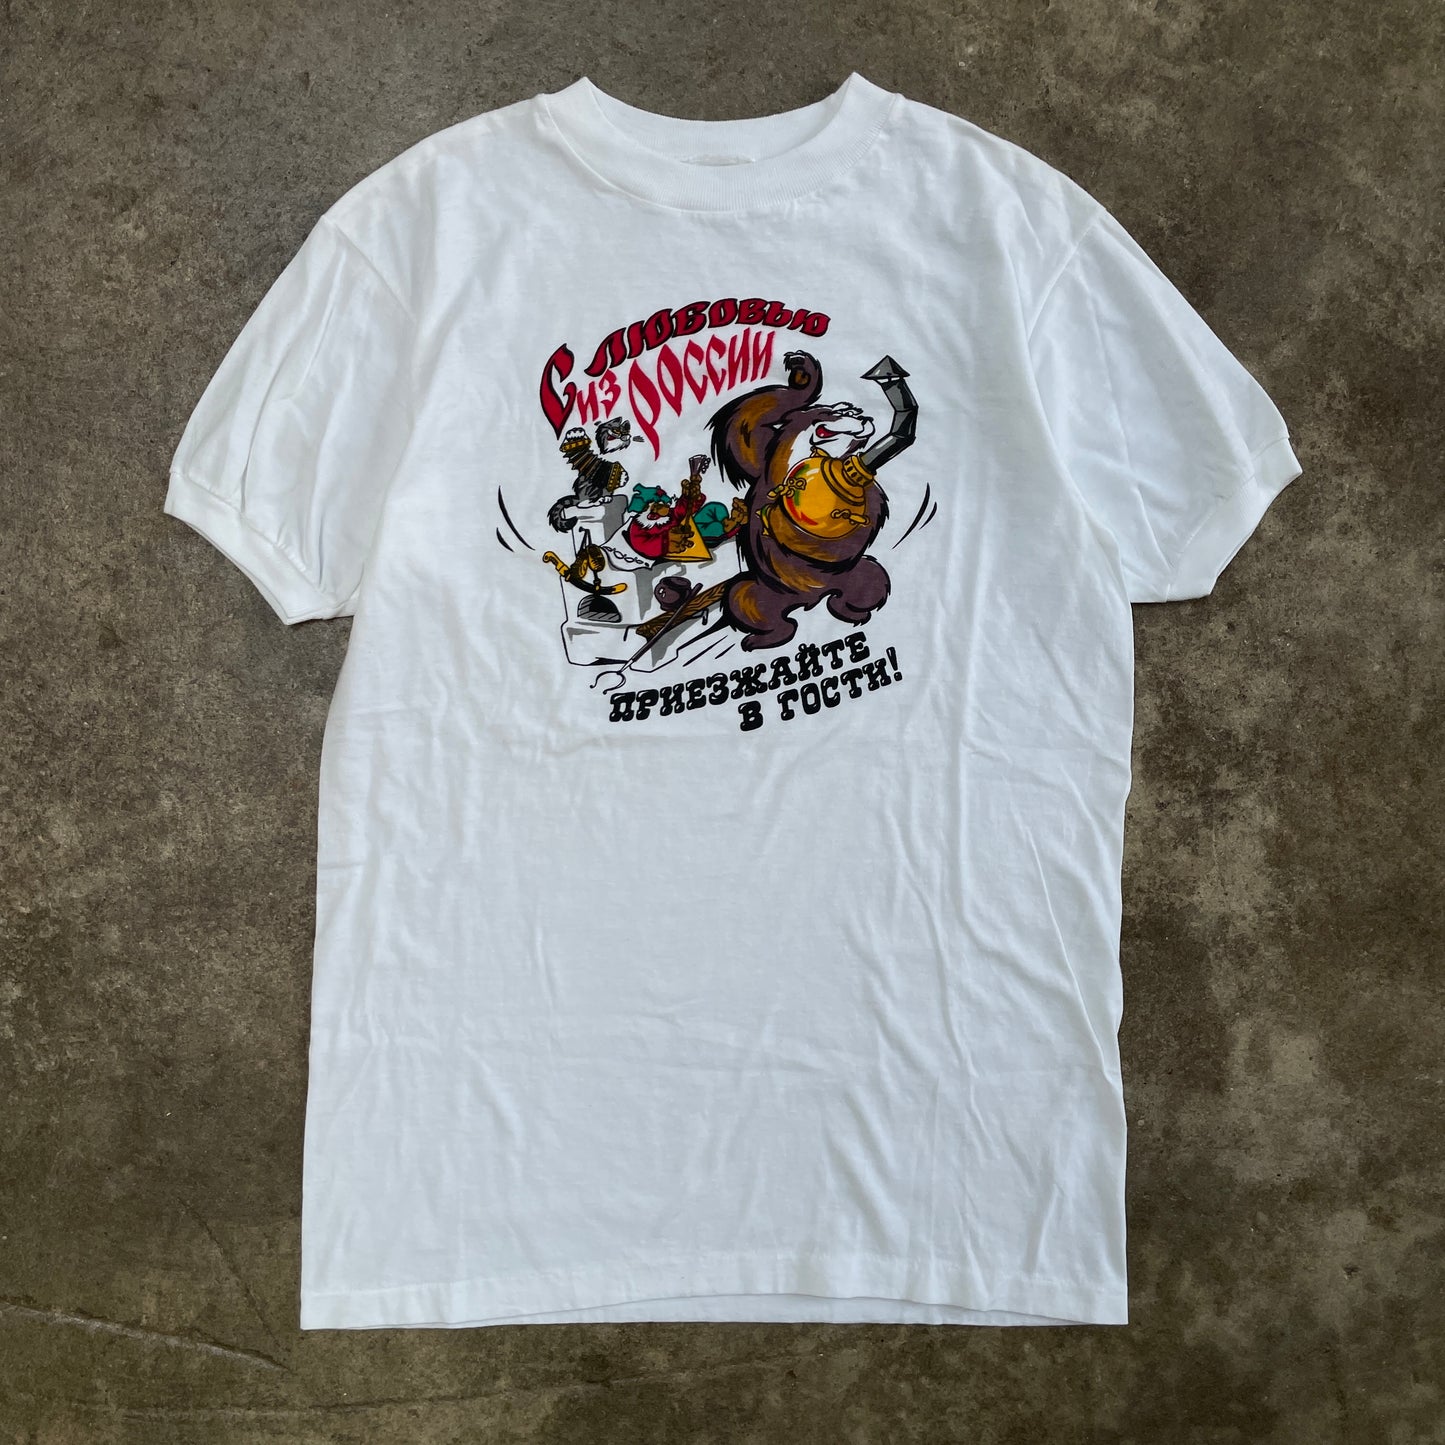 1980s Russian Festival Celebration Ringer T-Shirt